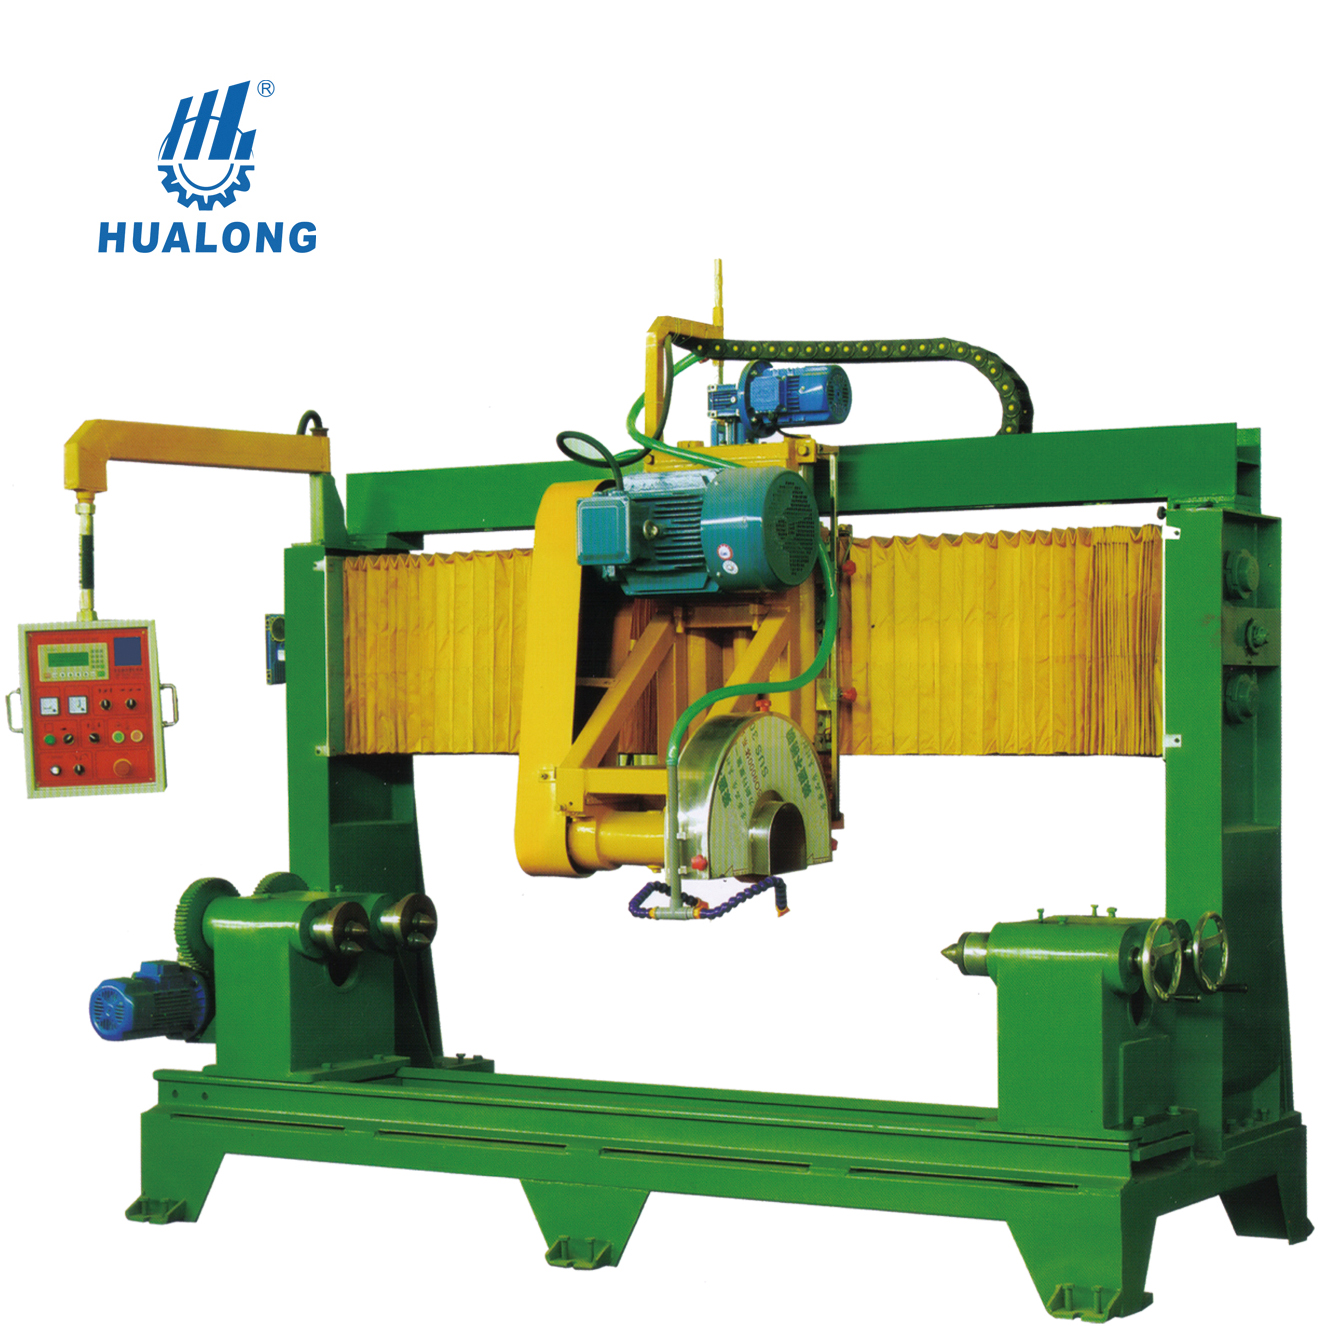 מכונות אבן Hualong אוטומטית מכונת פרופילי מעקה אבן טבעית לעיבוד מעקה שיש גניט HLFG-600